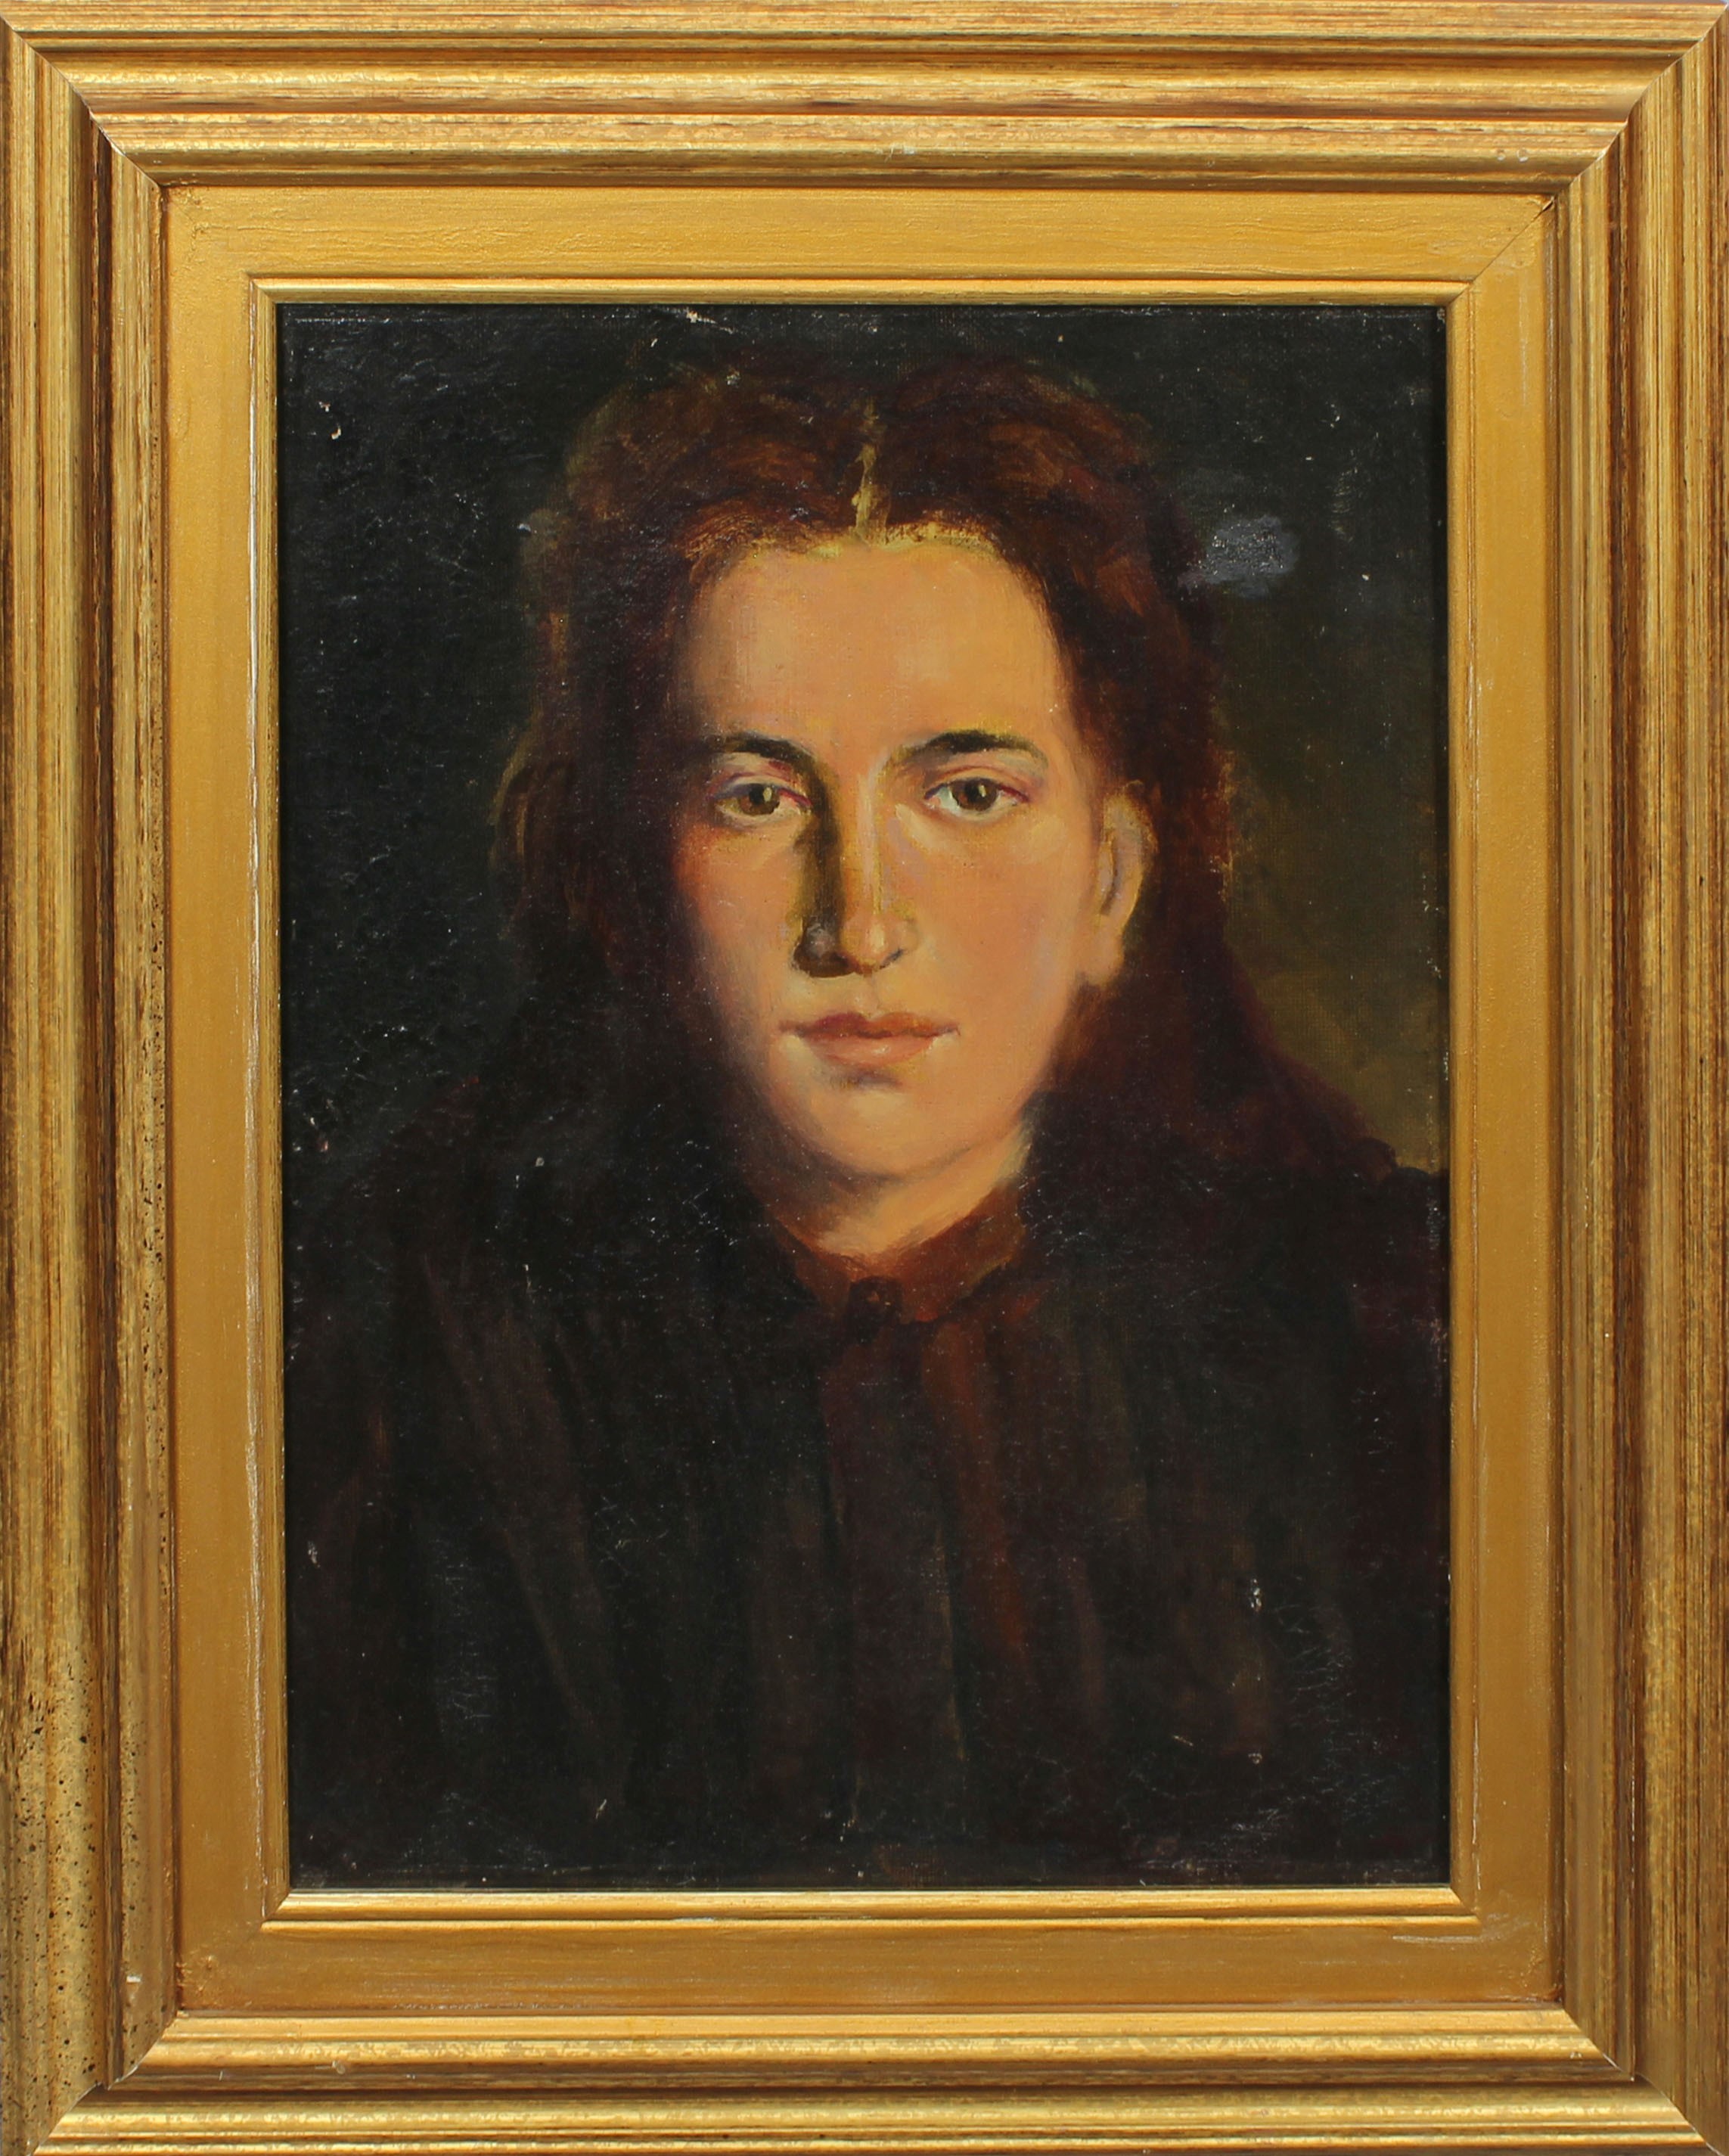 Ritratto di donna, nel retro la firma Bonfanti 1926, olio su tela, cm. 30x40